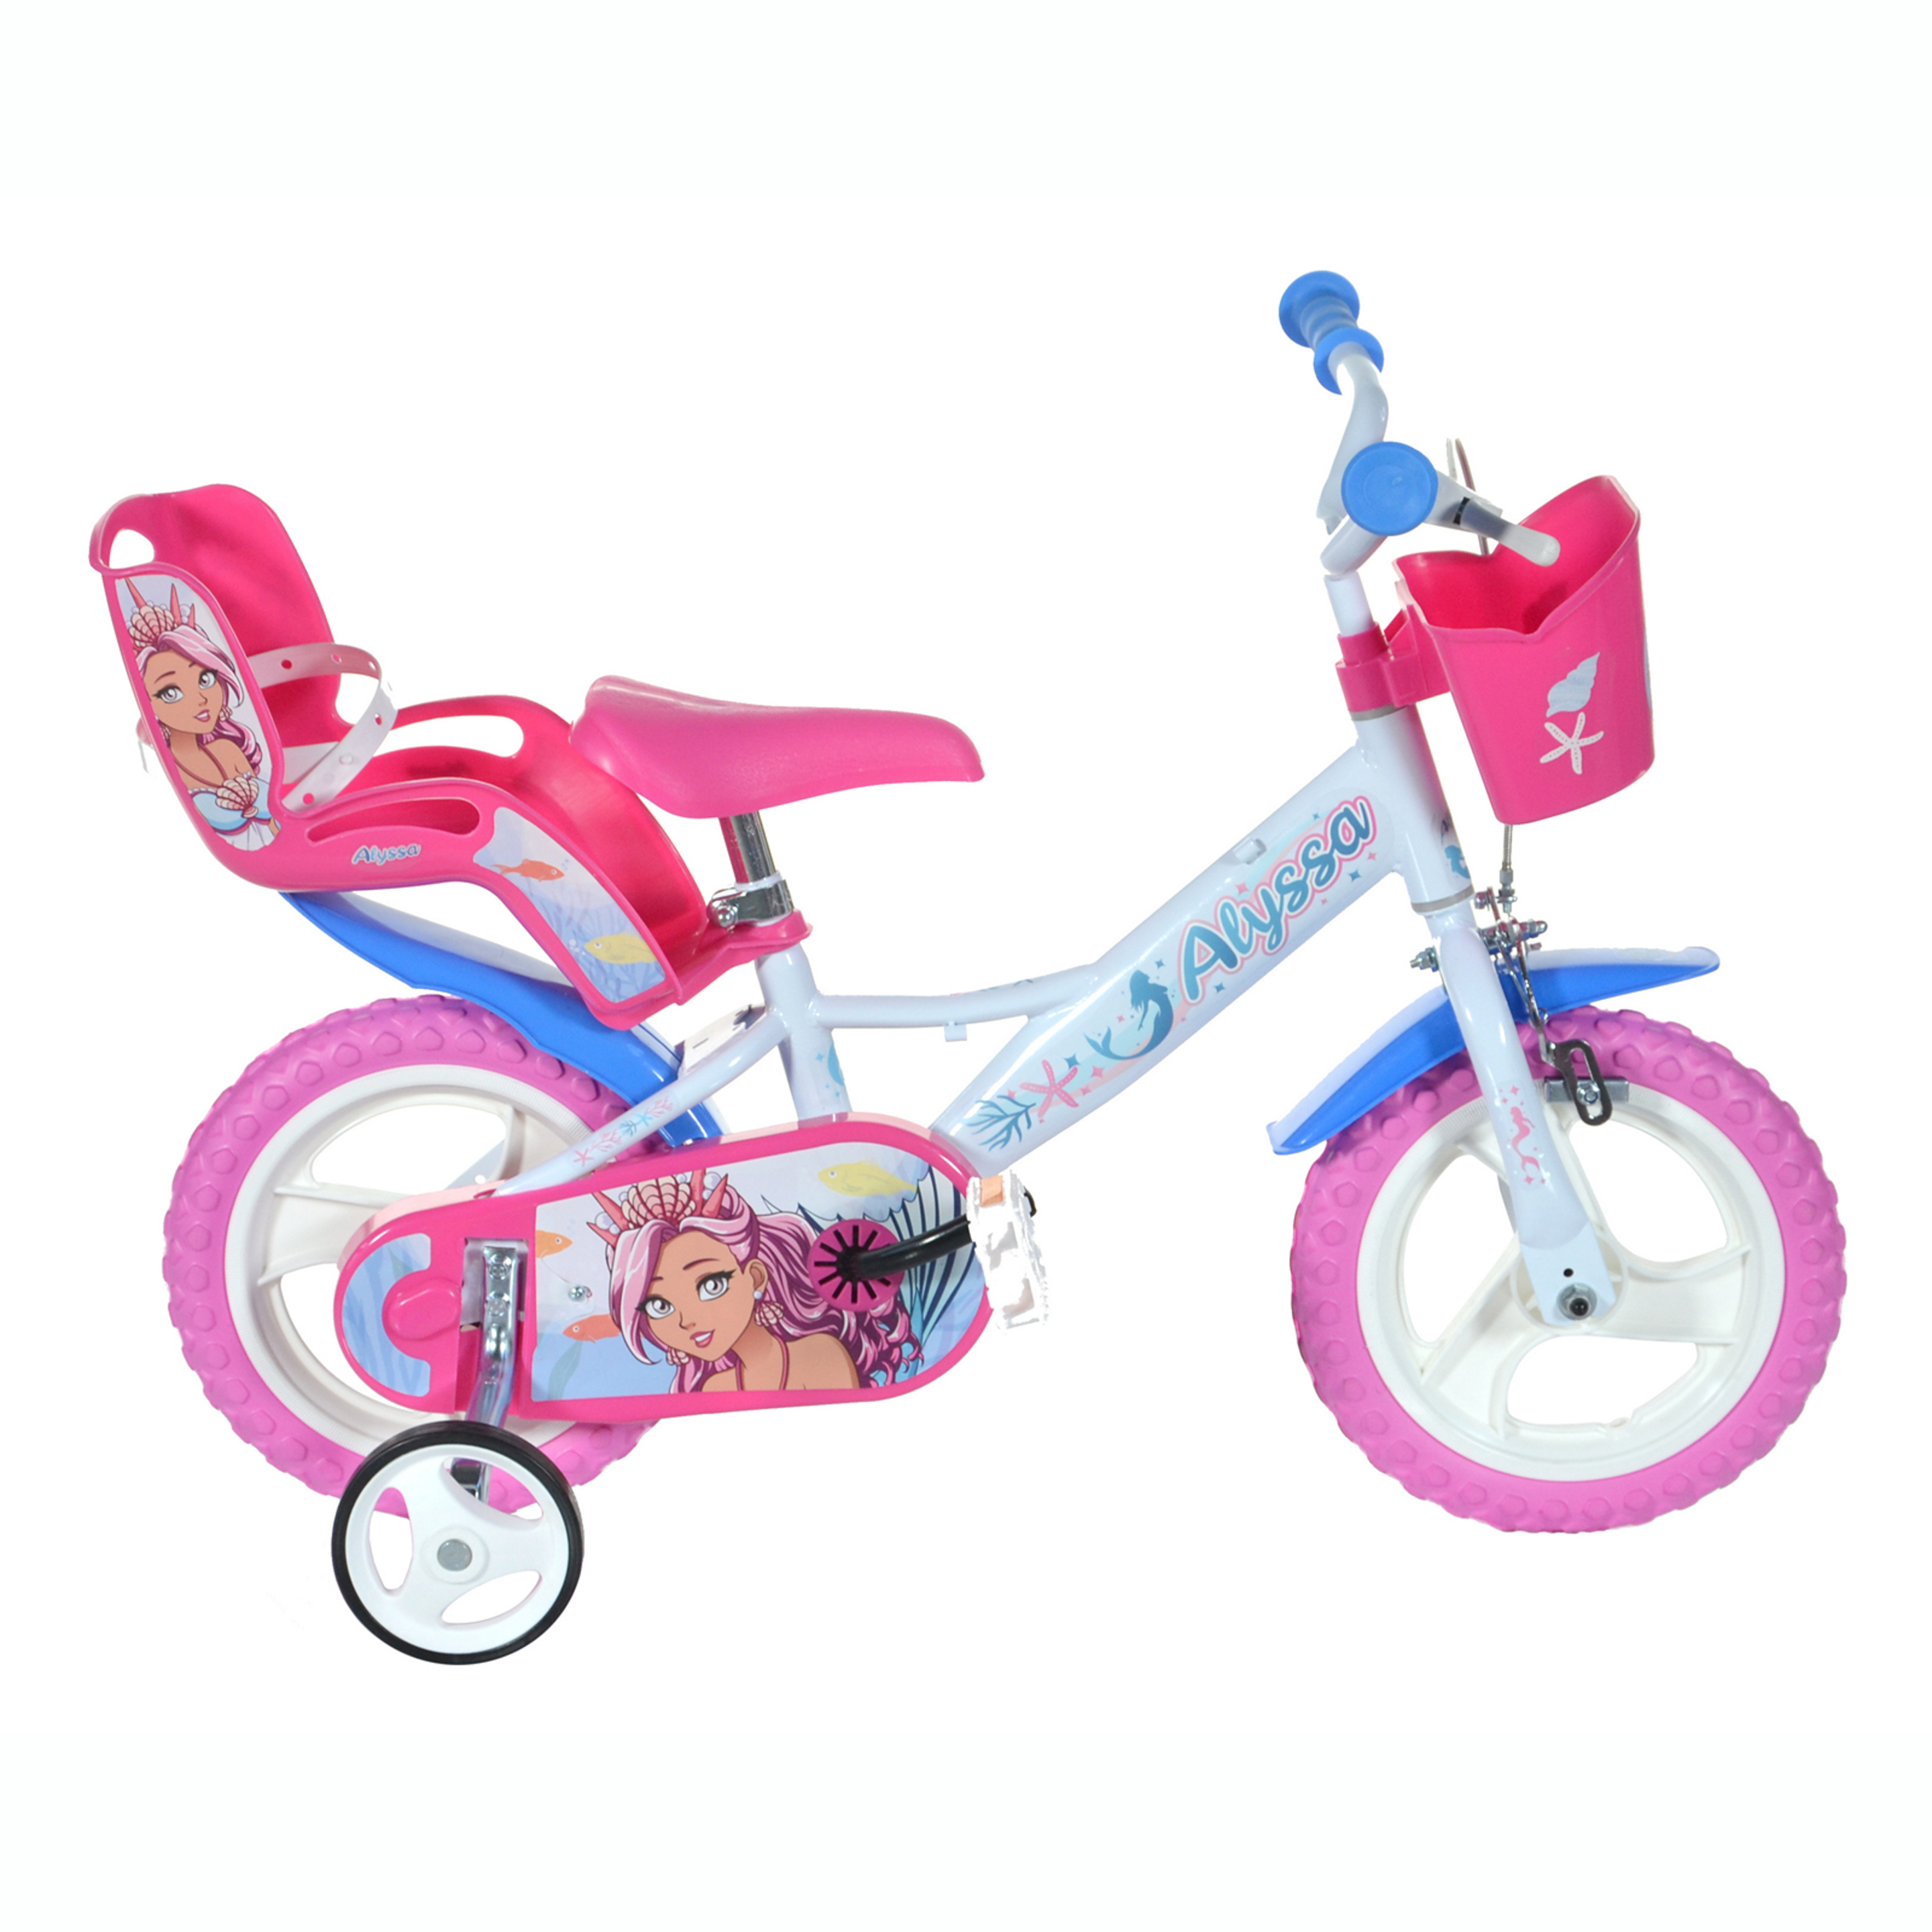 Bicicleta 12 Pulgadas Sirena 3-5 Años - blanco-rosa - 